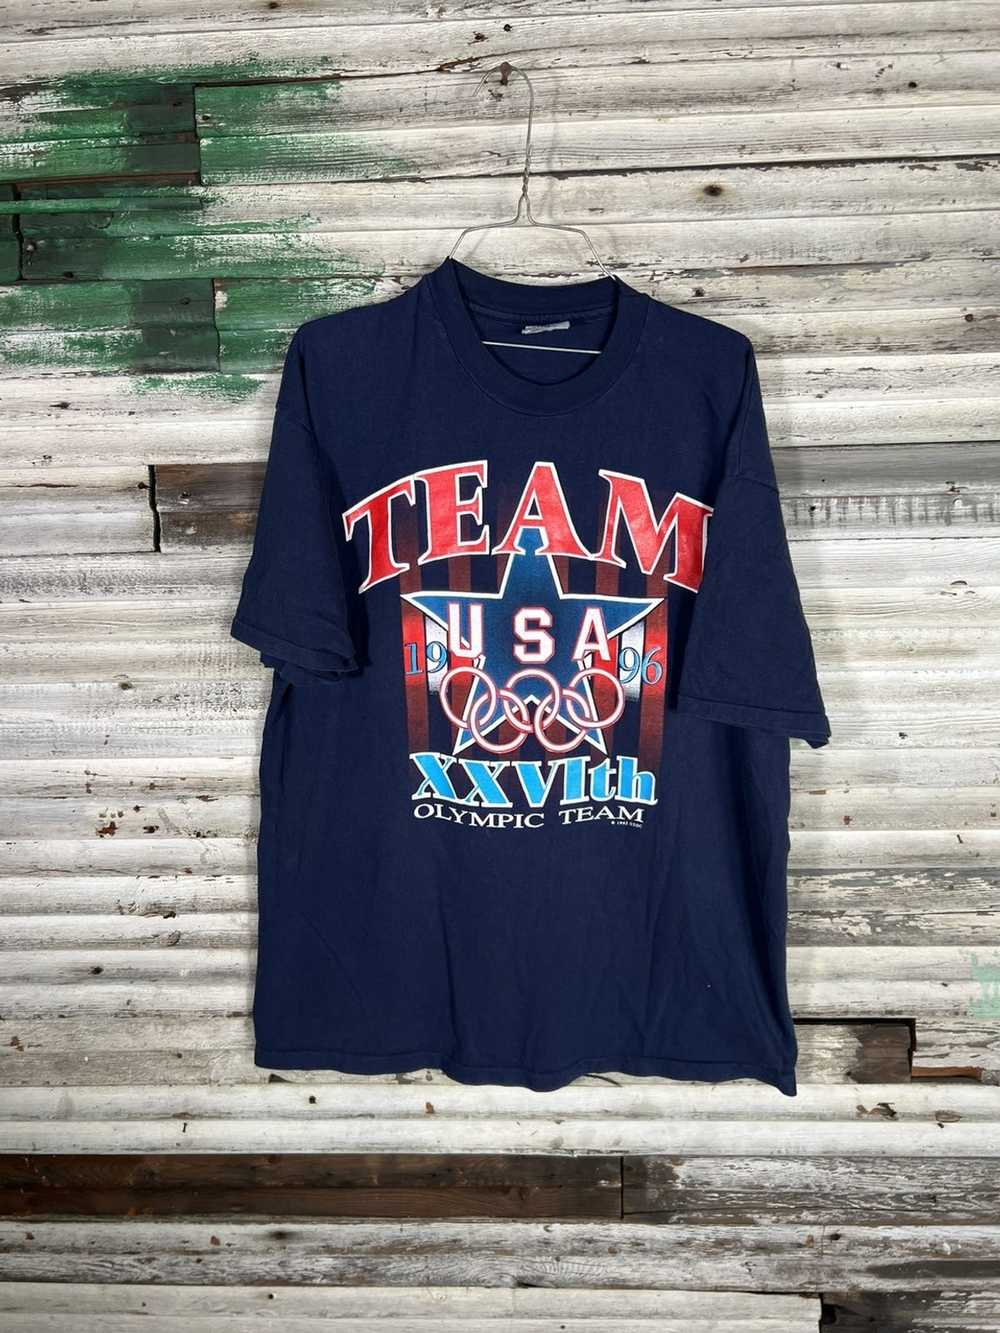 Vintage Vintage 1996 Olympics Shirt - image 1